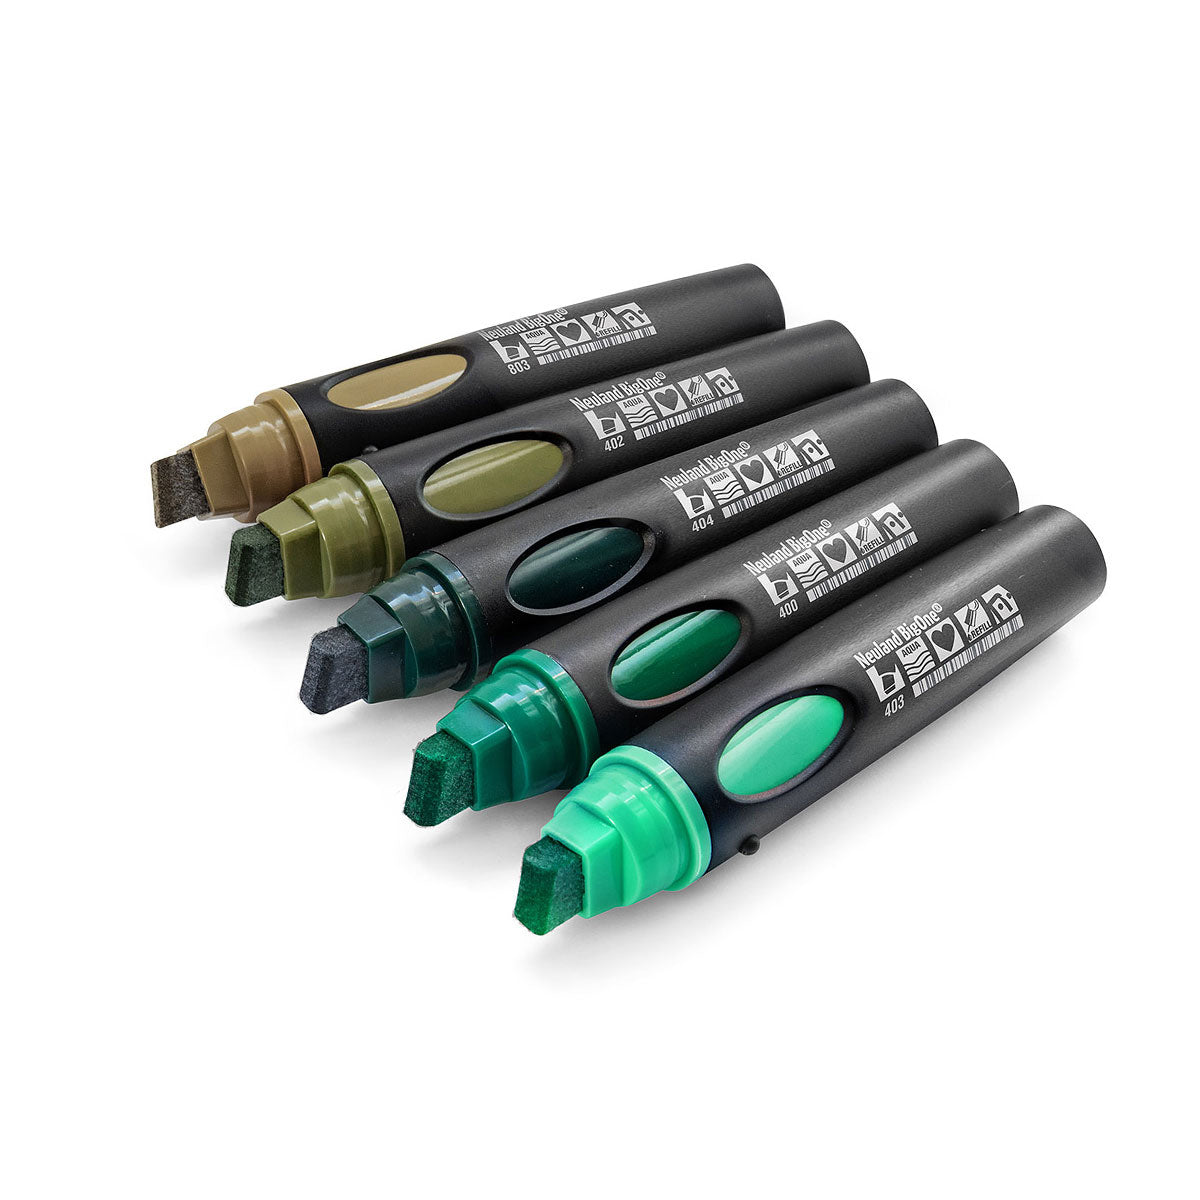 Neuland BigOne®, wigpunt 6-12 mm: 5/ kleur sets- set no. 12 back to green